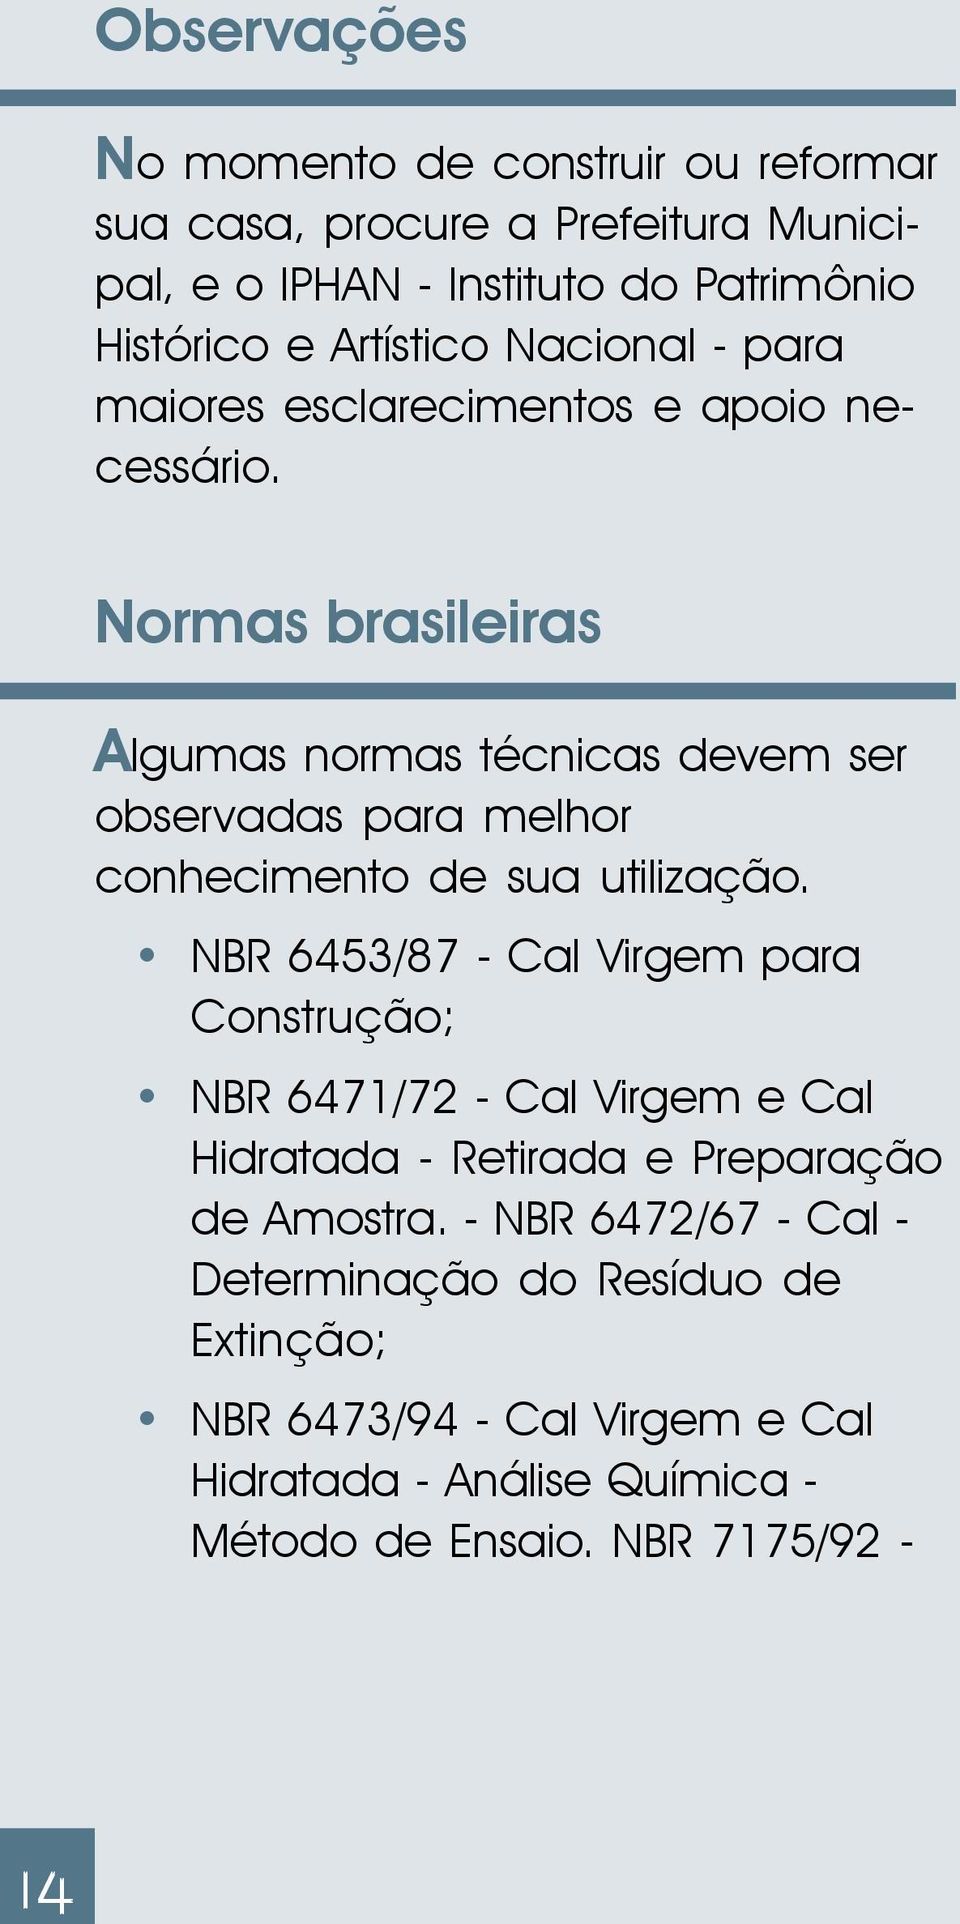 Normas brasileiras Algumas normas técnicas devem ser observadas para melhor conhecimento de sua utilização.